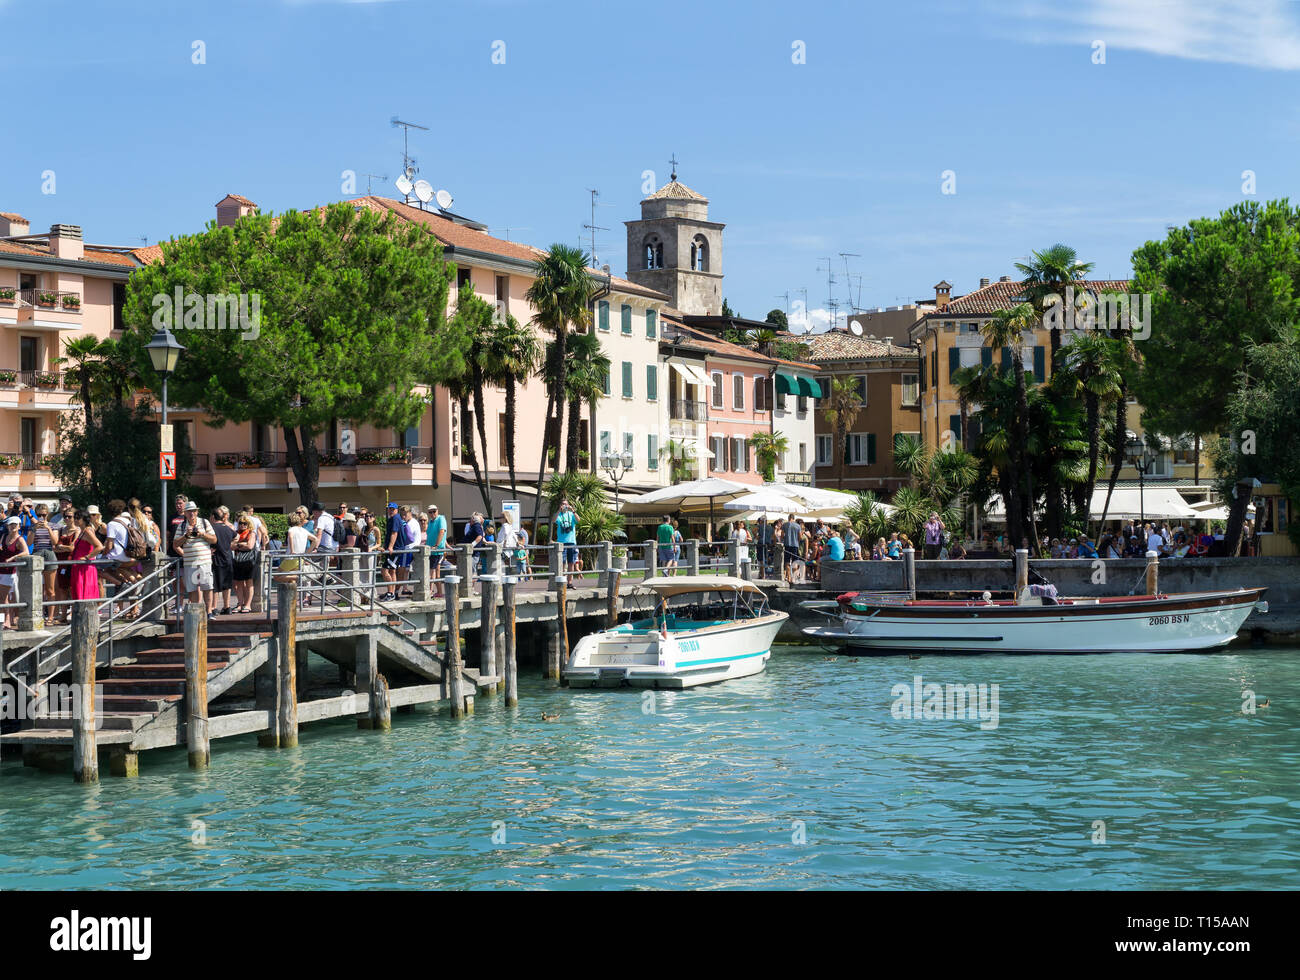 Sirmione, Italia - Agosto 07 2017: i turisti sono in attesa di una nave nel porto di Sirmione sul Lago di Garda. Sirmione è cittadina medievale situato sulla Sir Foto Stock